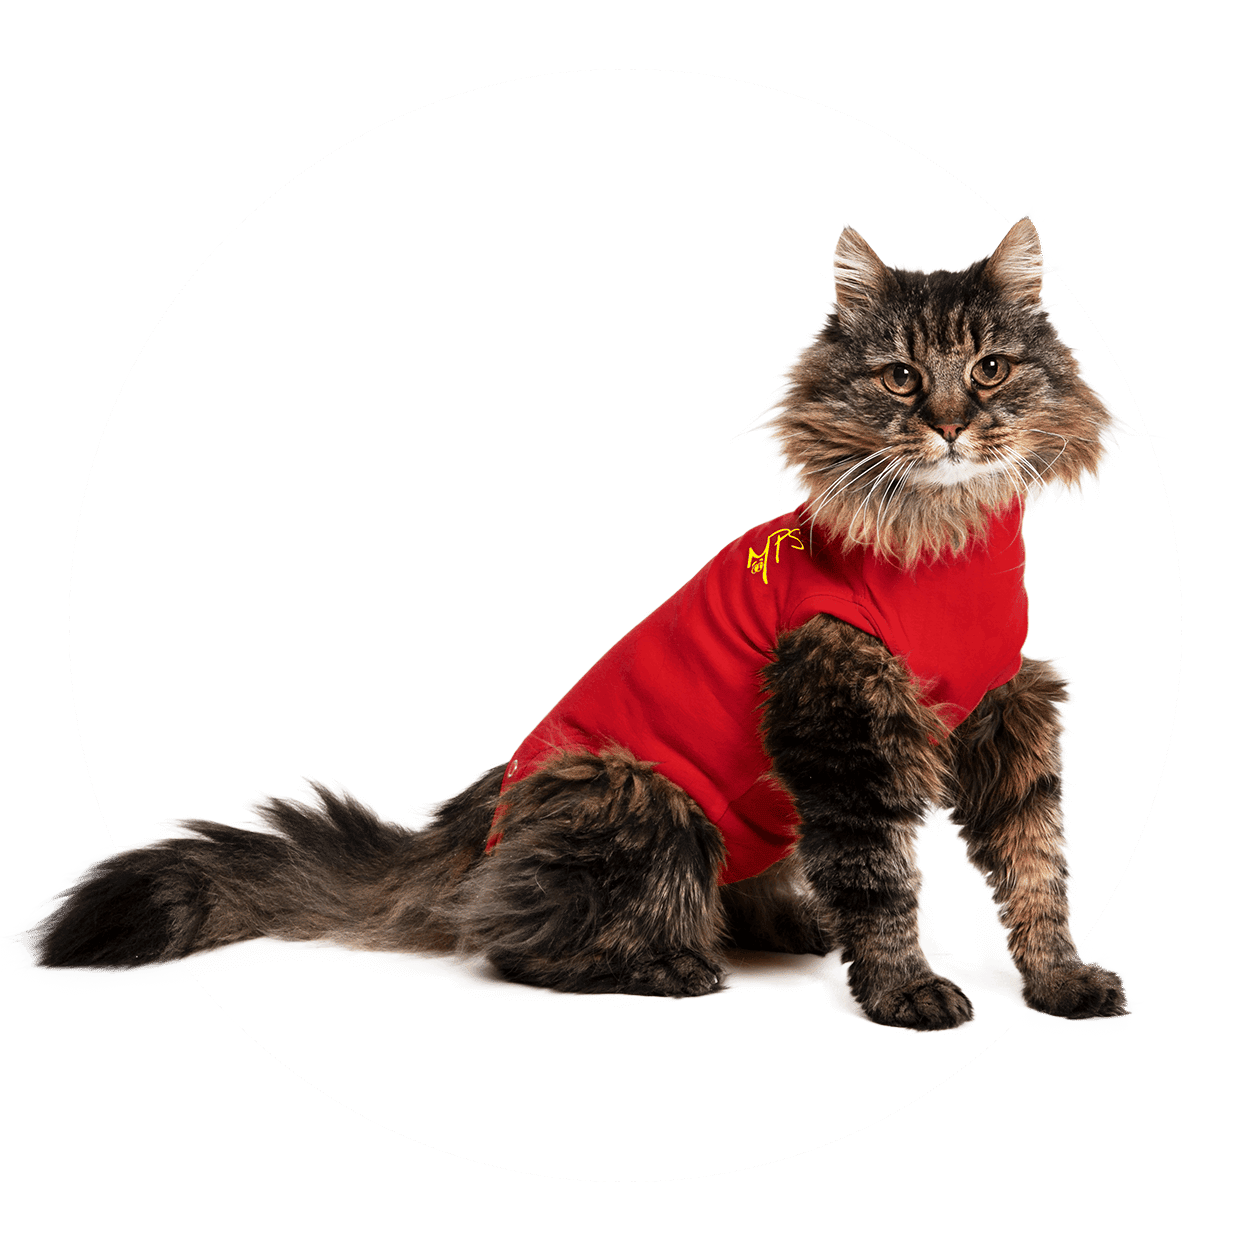 Rafflesia Arnoldi stem Buurt Medical Pet Shirt Kat kopen? Veilig en betrouwbaar bestellen!